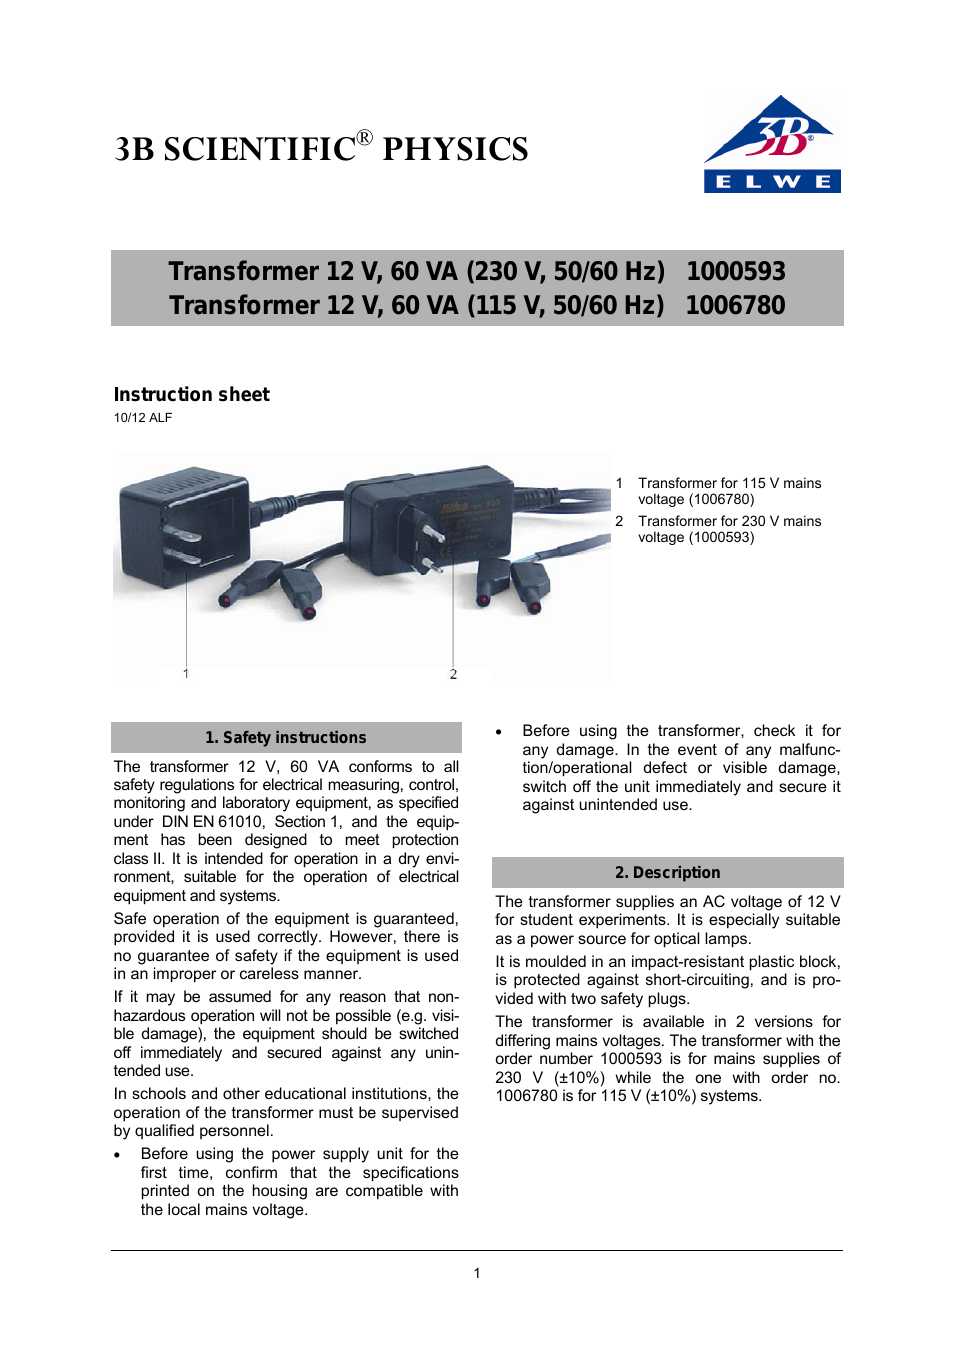 Transformer 12 V, 60 VA (230 V, 50__60 Hz)